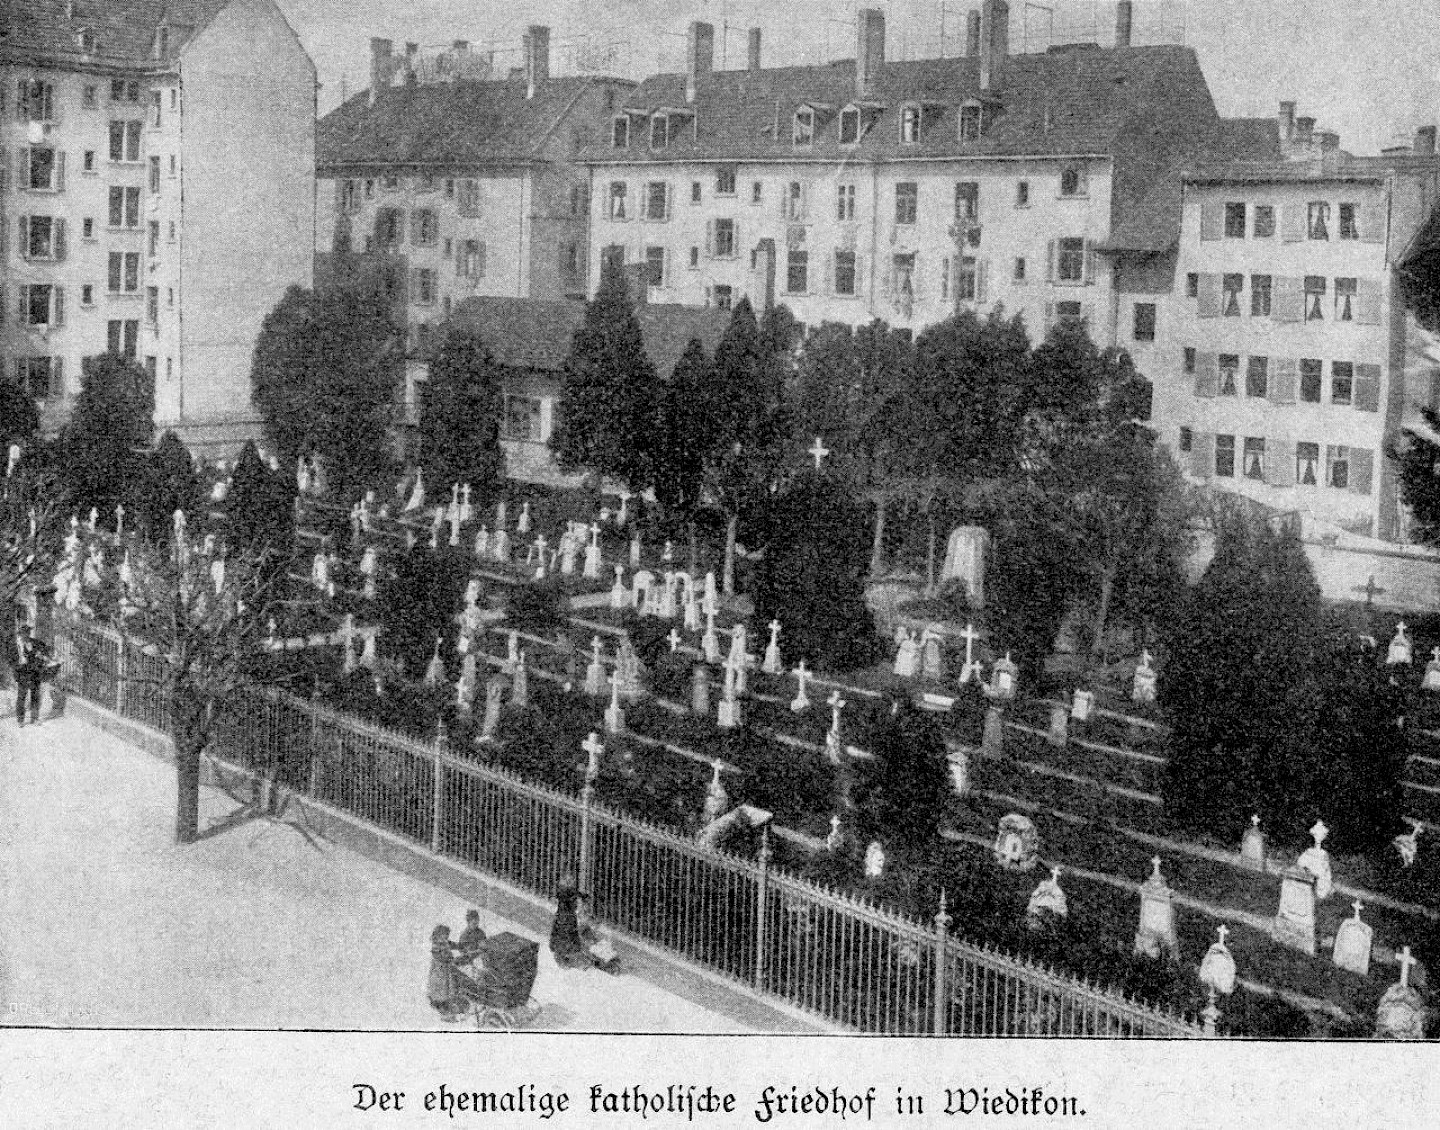 der ehemalige katholische Friedhof an der Elisabethenstrasse in Zürich, © Baugeschichtliches Archiv, Zürich